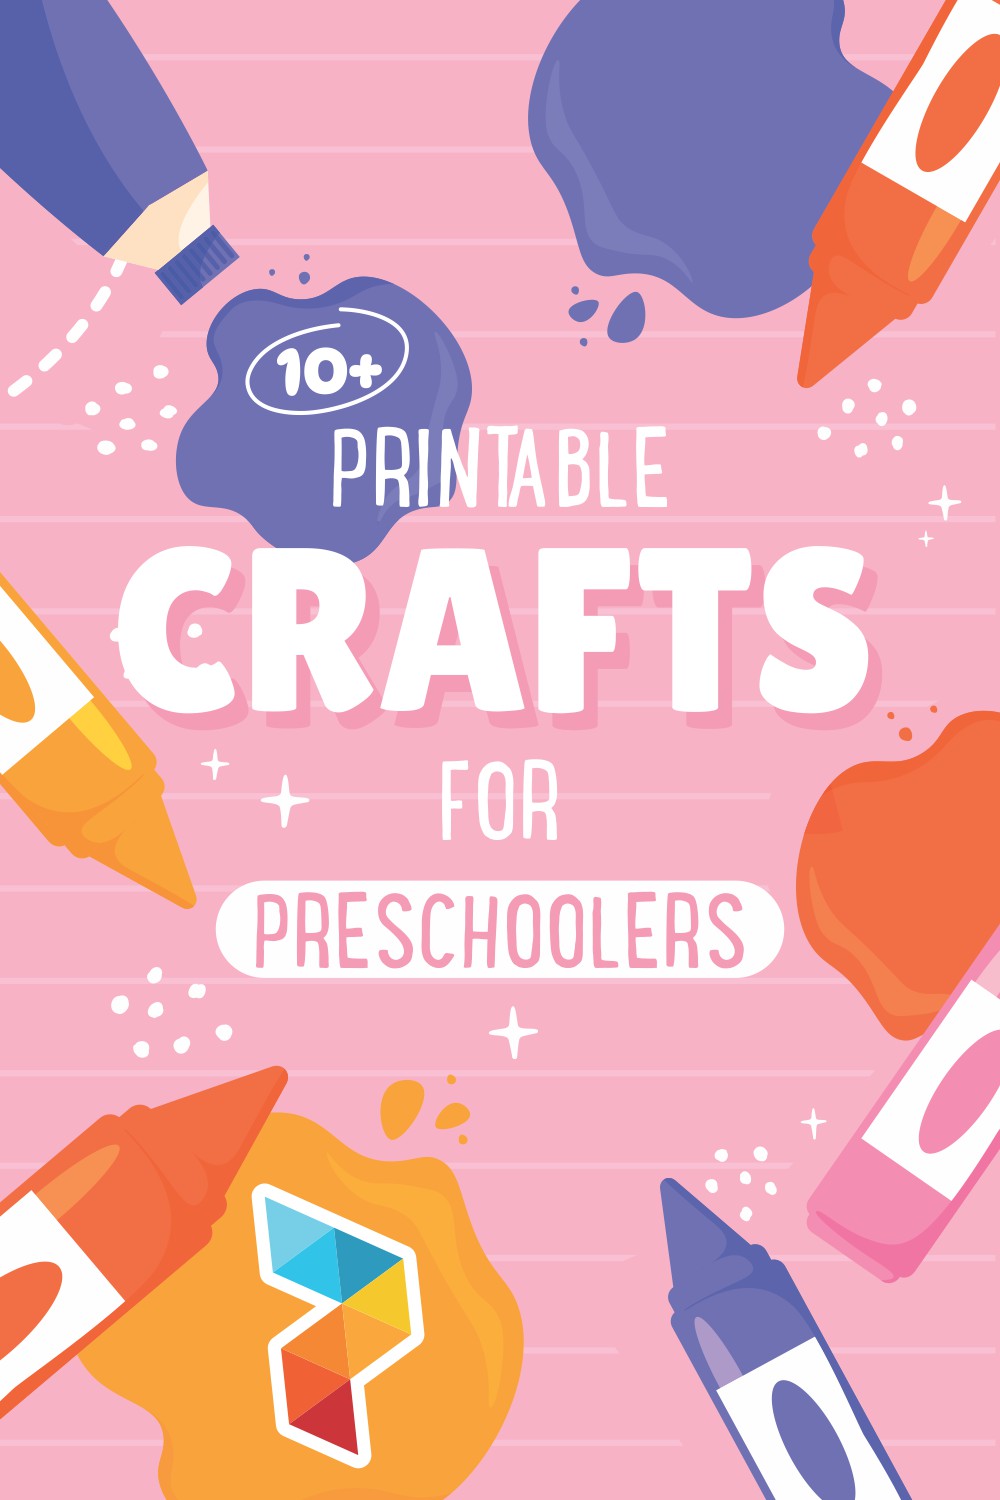 Crafts For Preschoolers